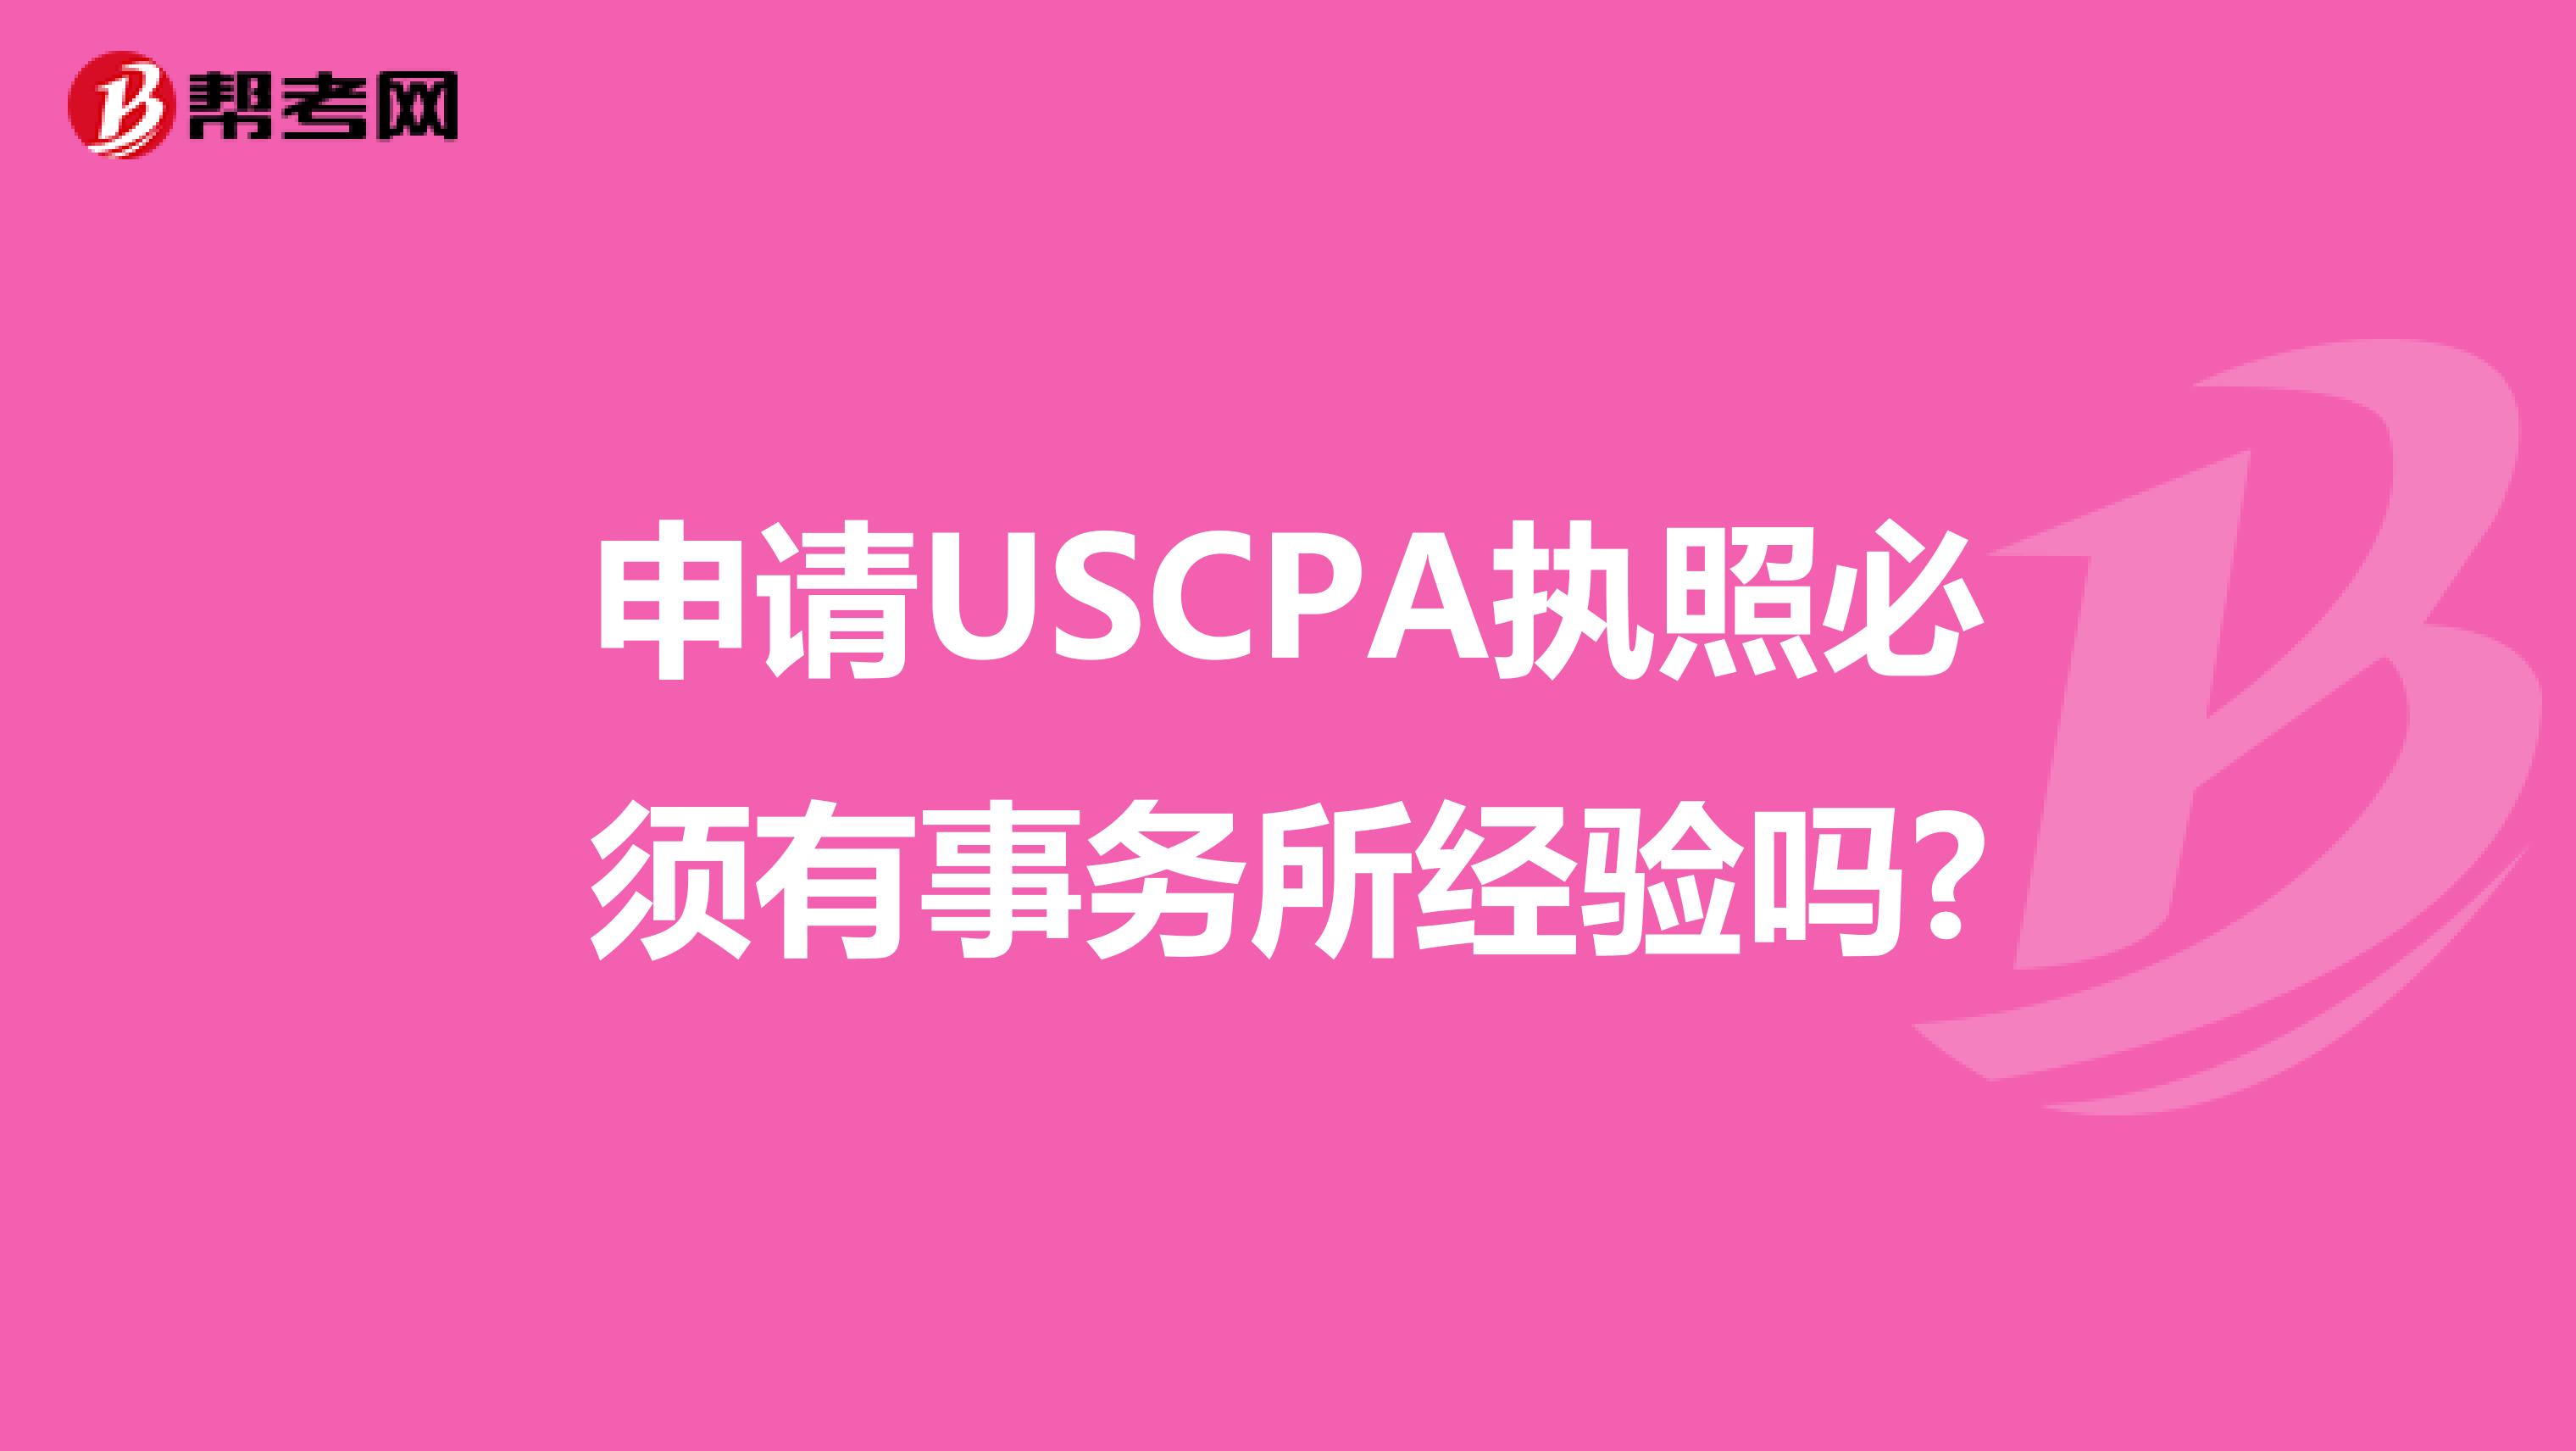 申请USCPA执照必须有事务所经验吗?